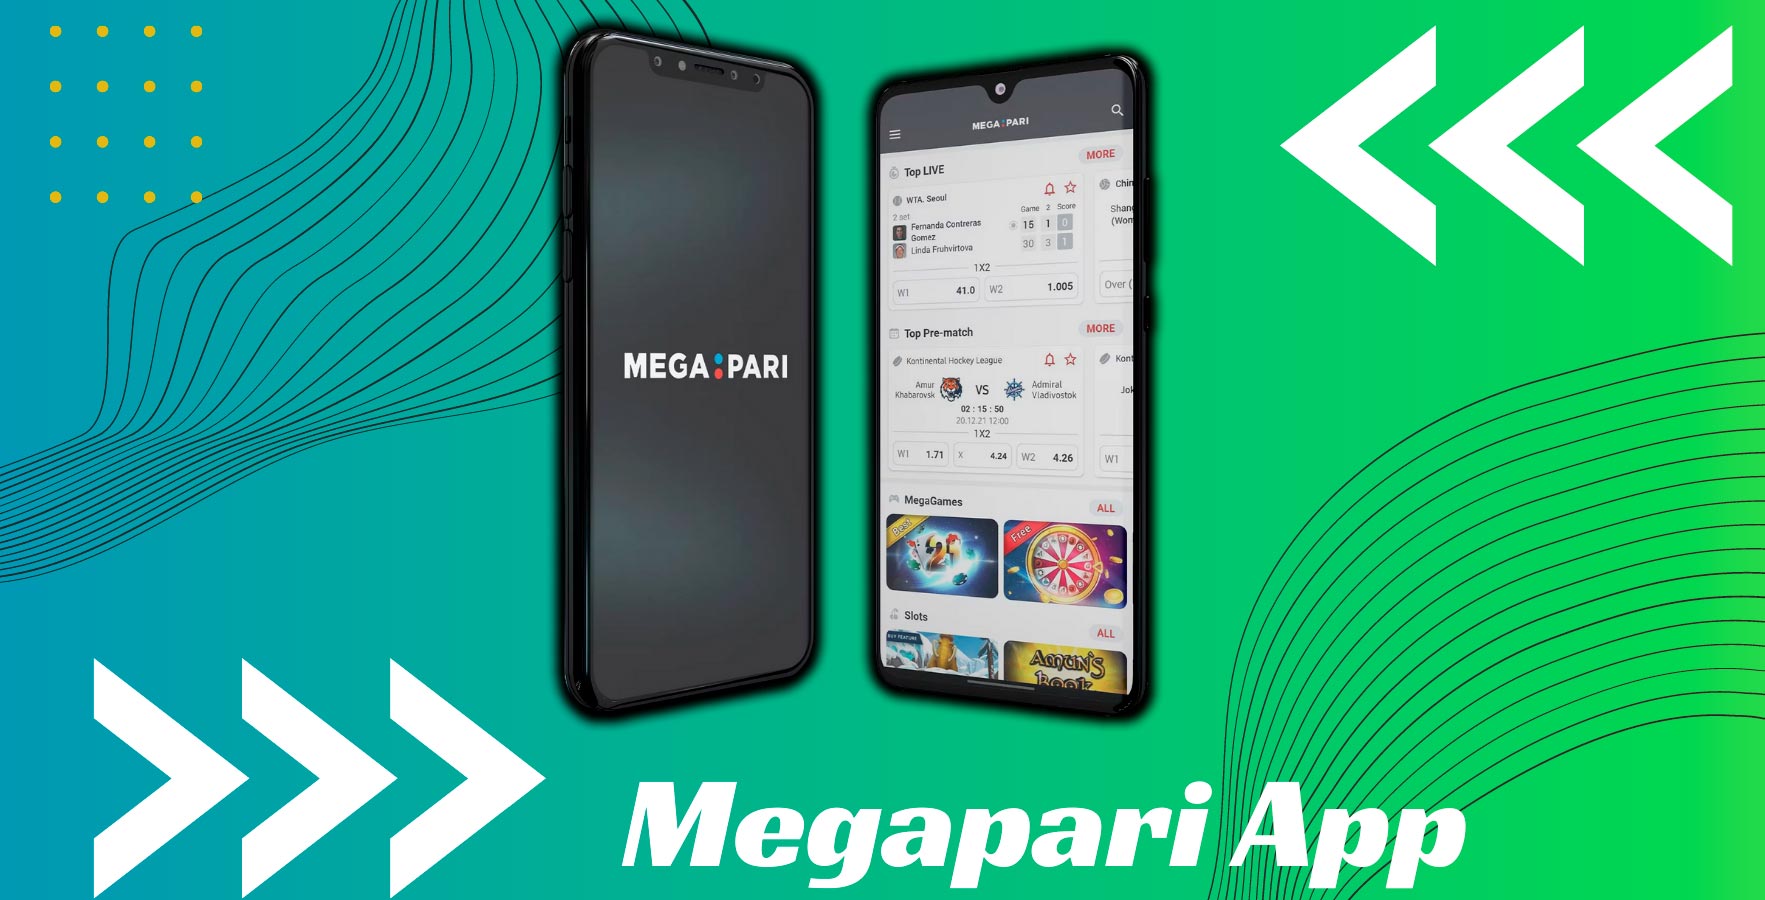 Megapari App In India